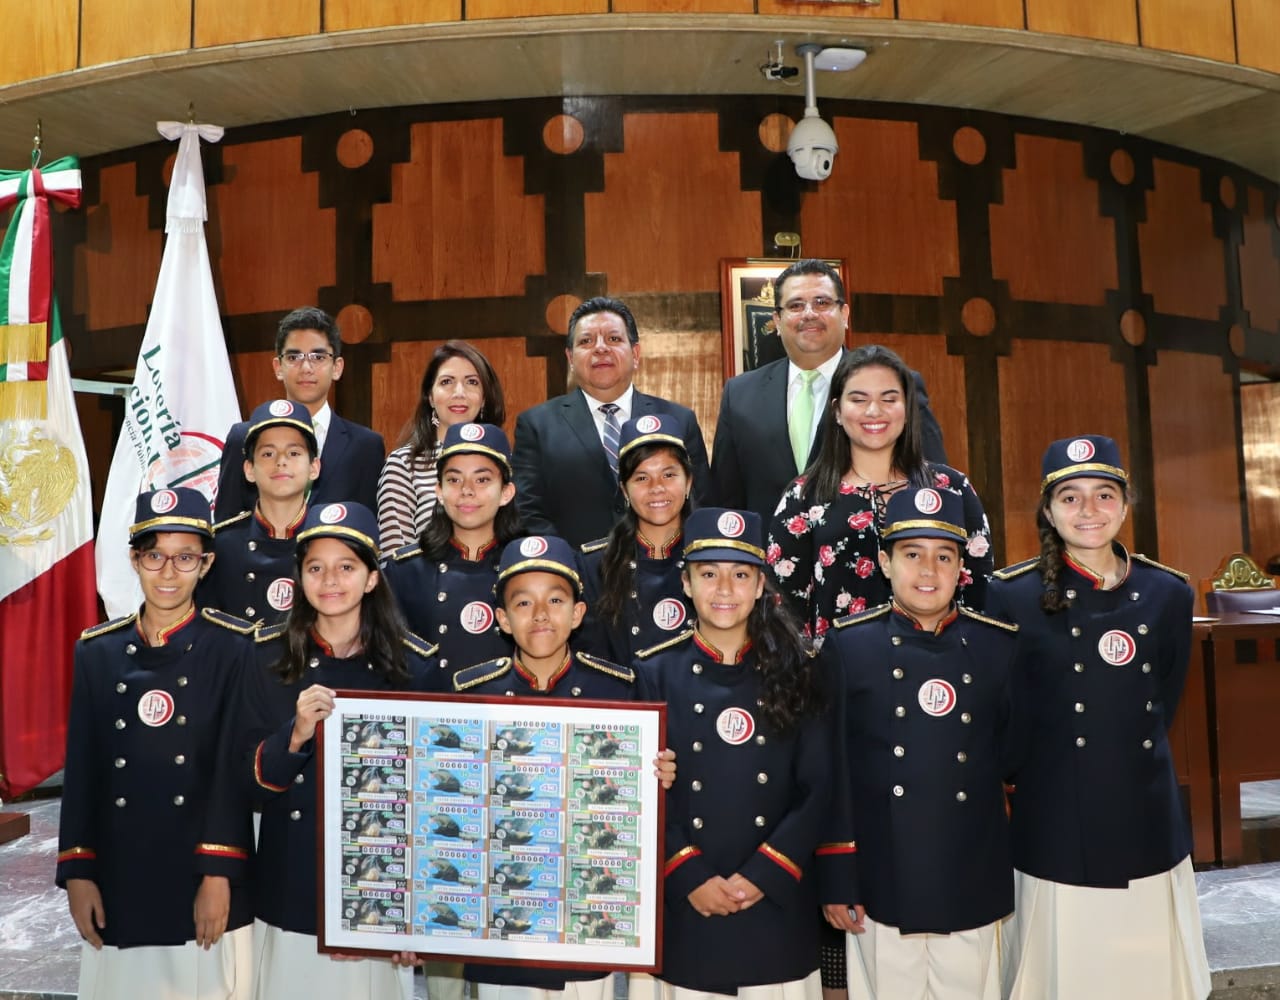 Fotografía de las autoridades que encabezaron el sorteo acompañados de las niñas y niños gritones de la Lotería Nacional.